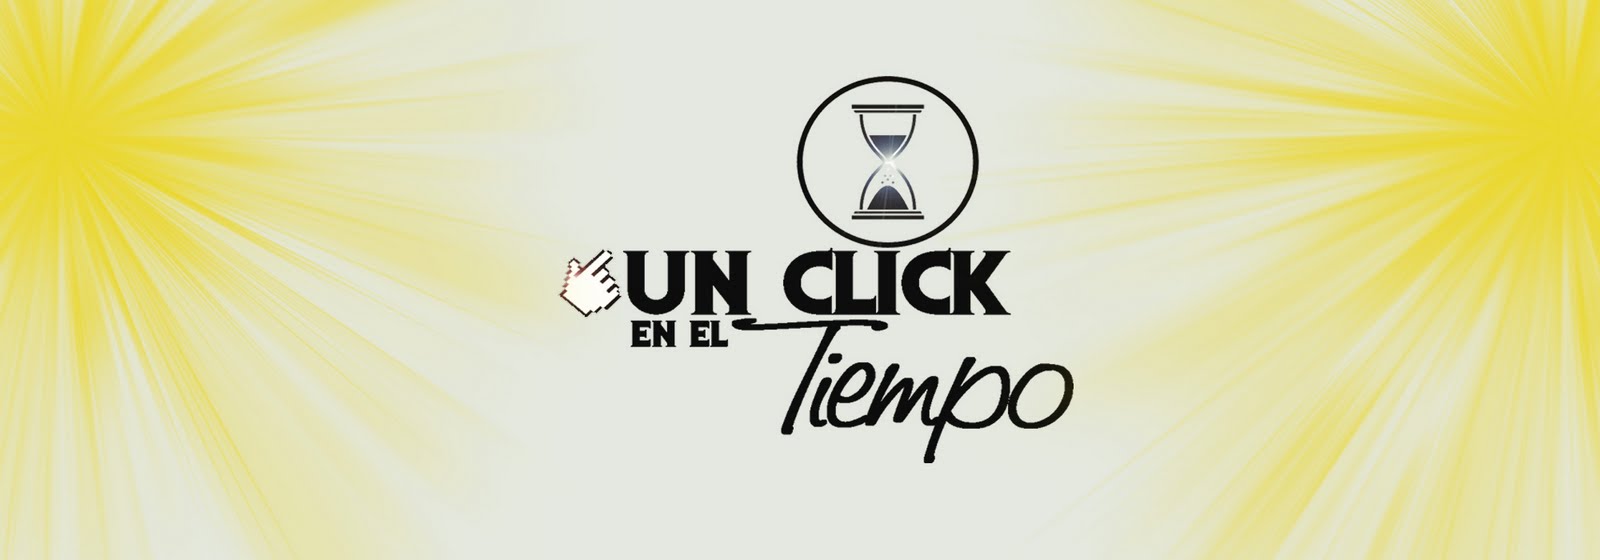 UN CLICK EN EL TIEMPO